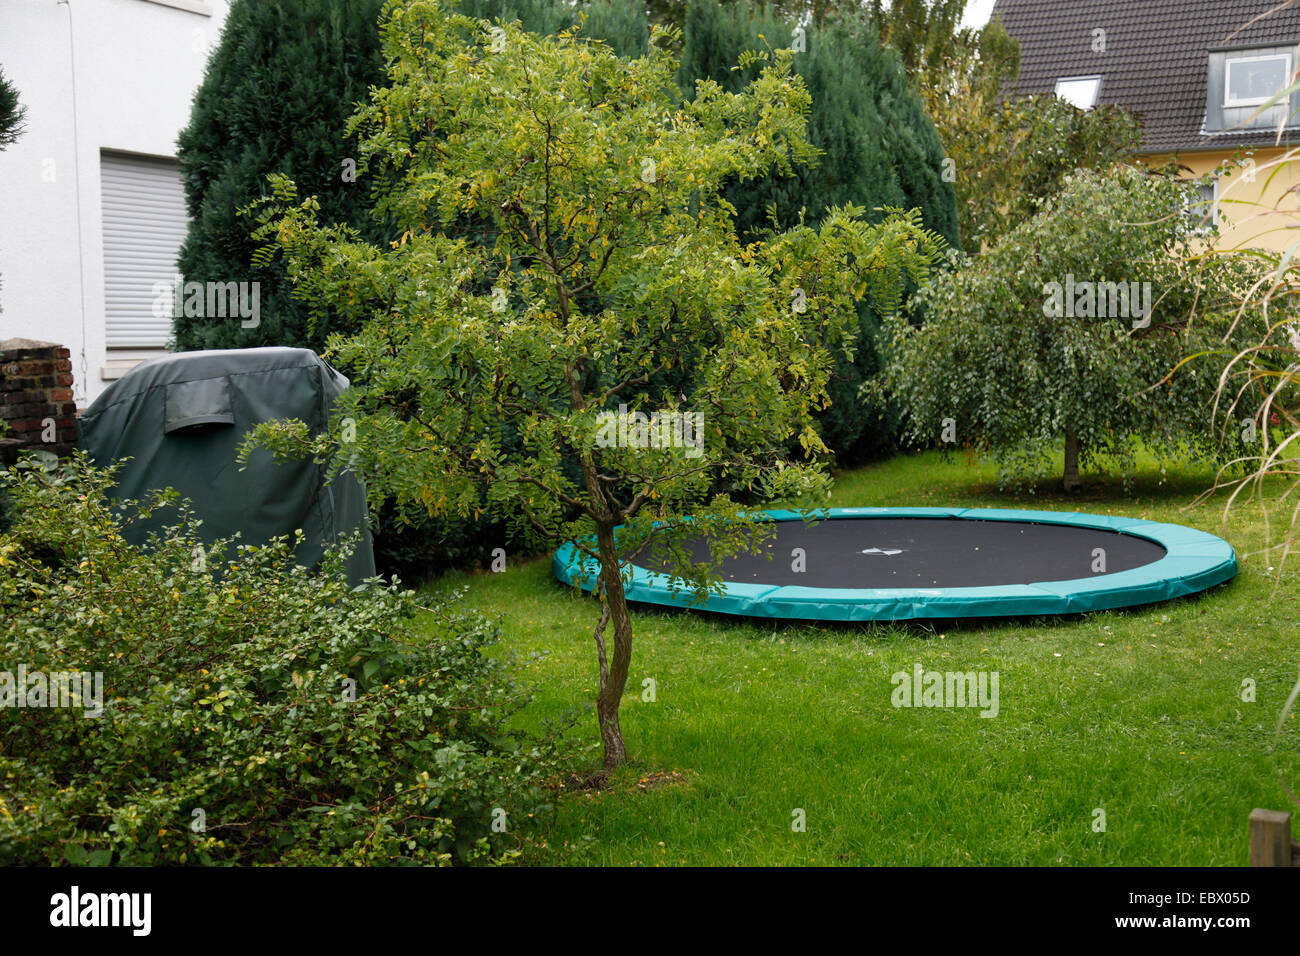 Trampolin im Garten, Deutschland Stockfotografie - Alamy